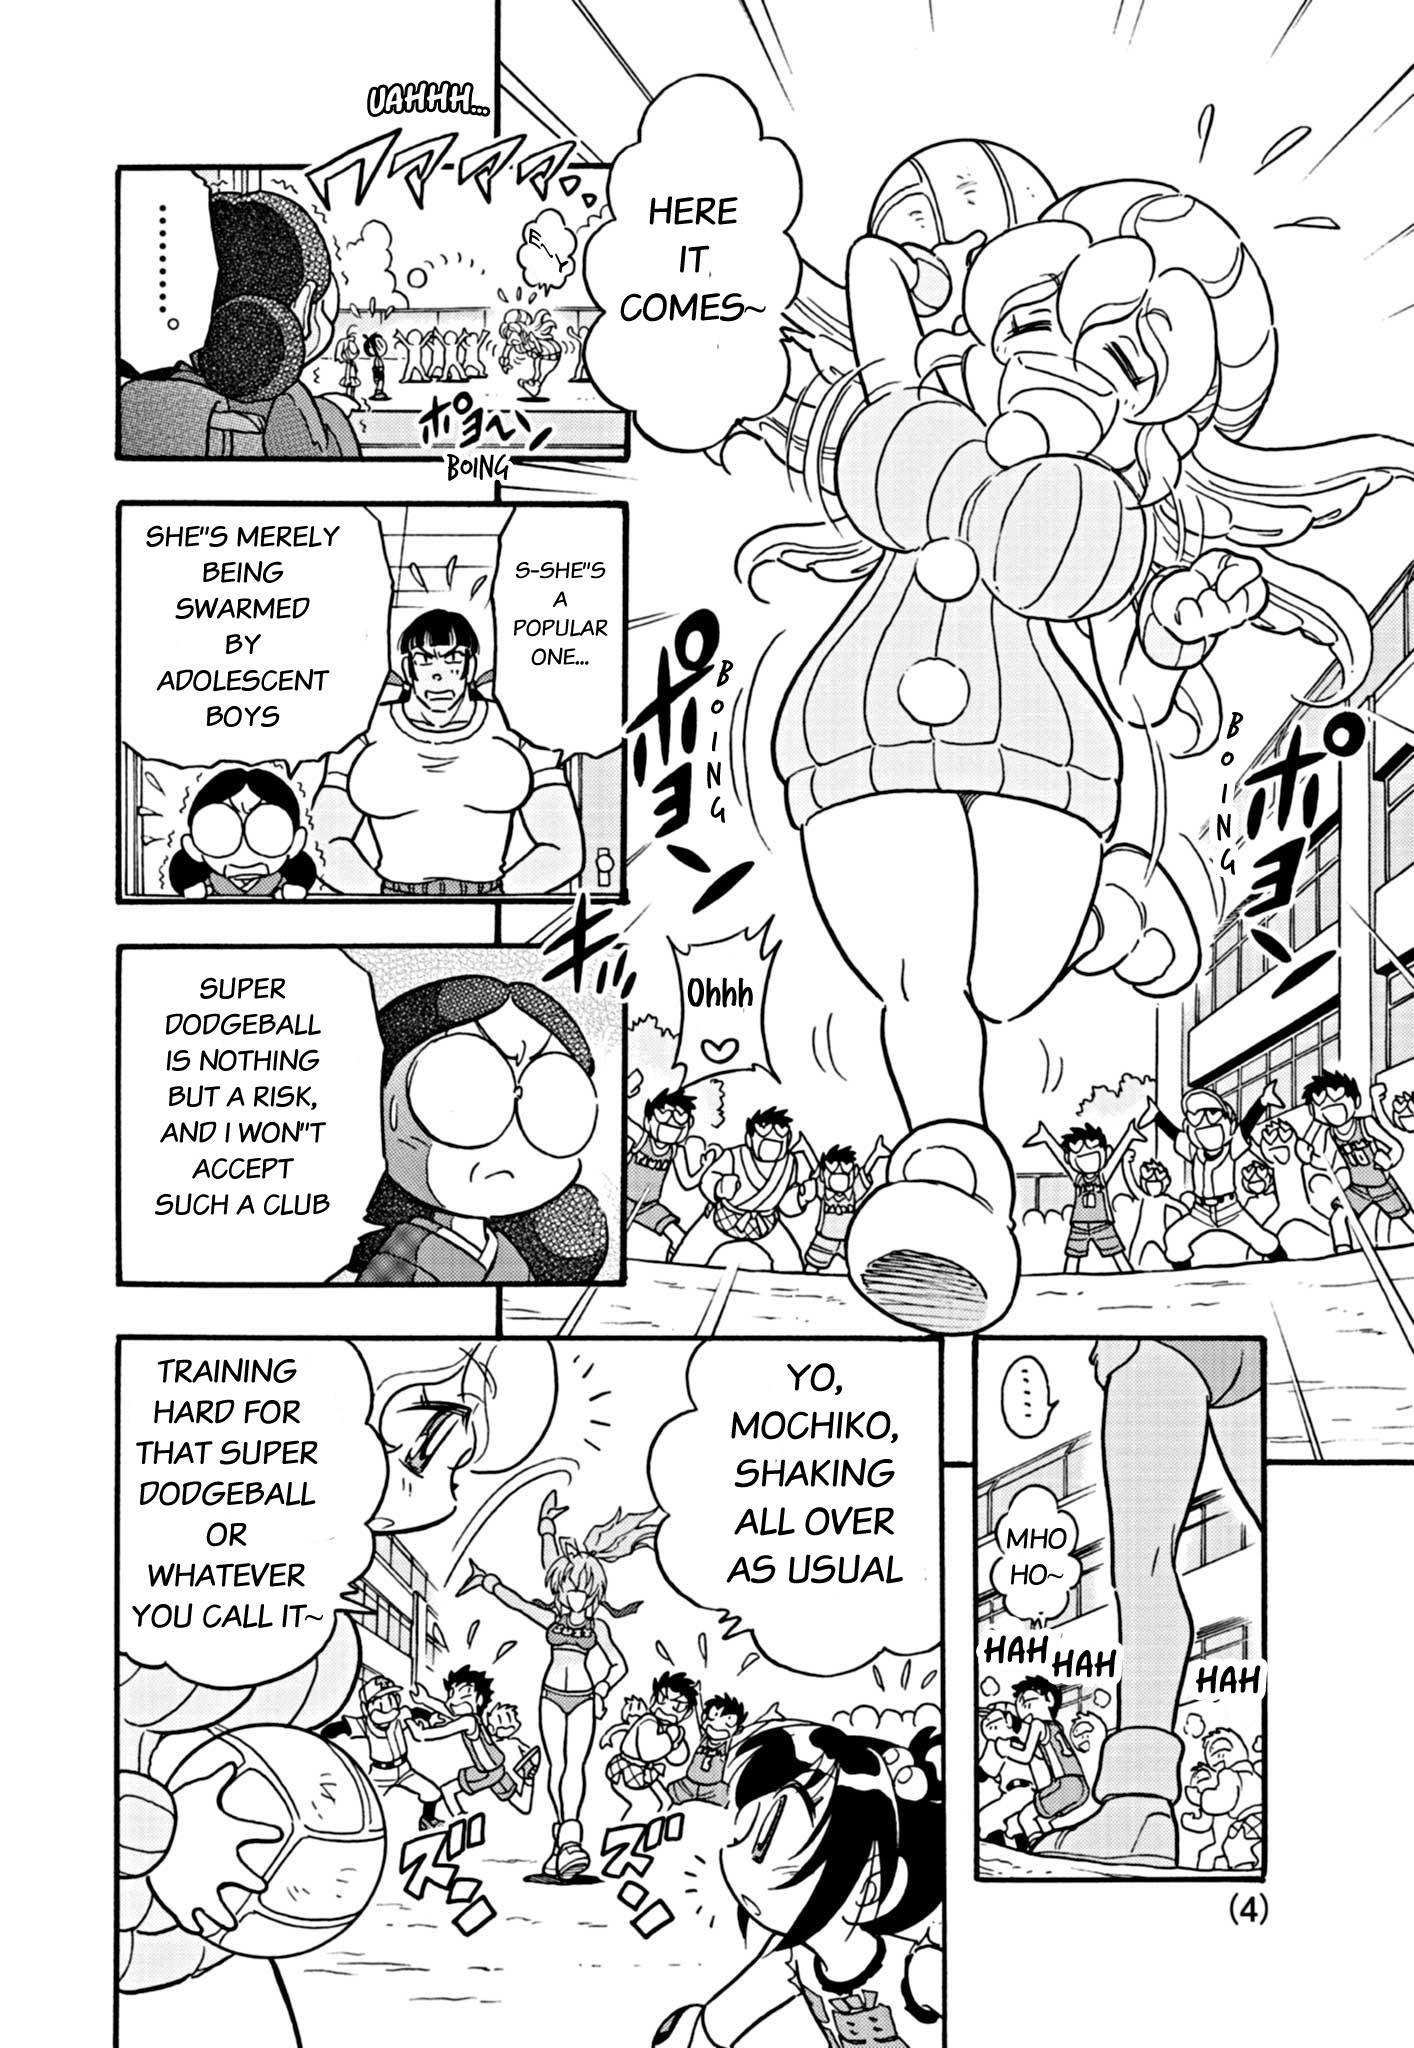 Flaming Ball Girl Dodge Danko - Page 4